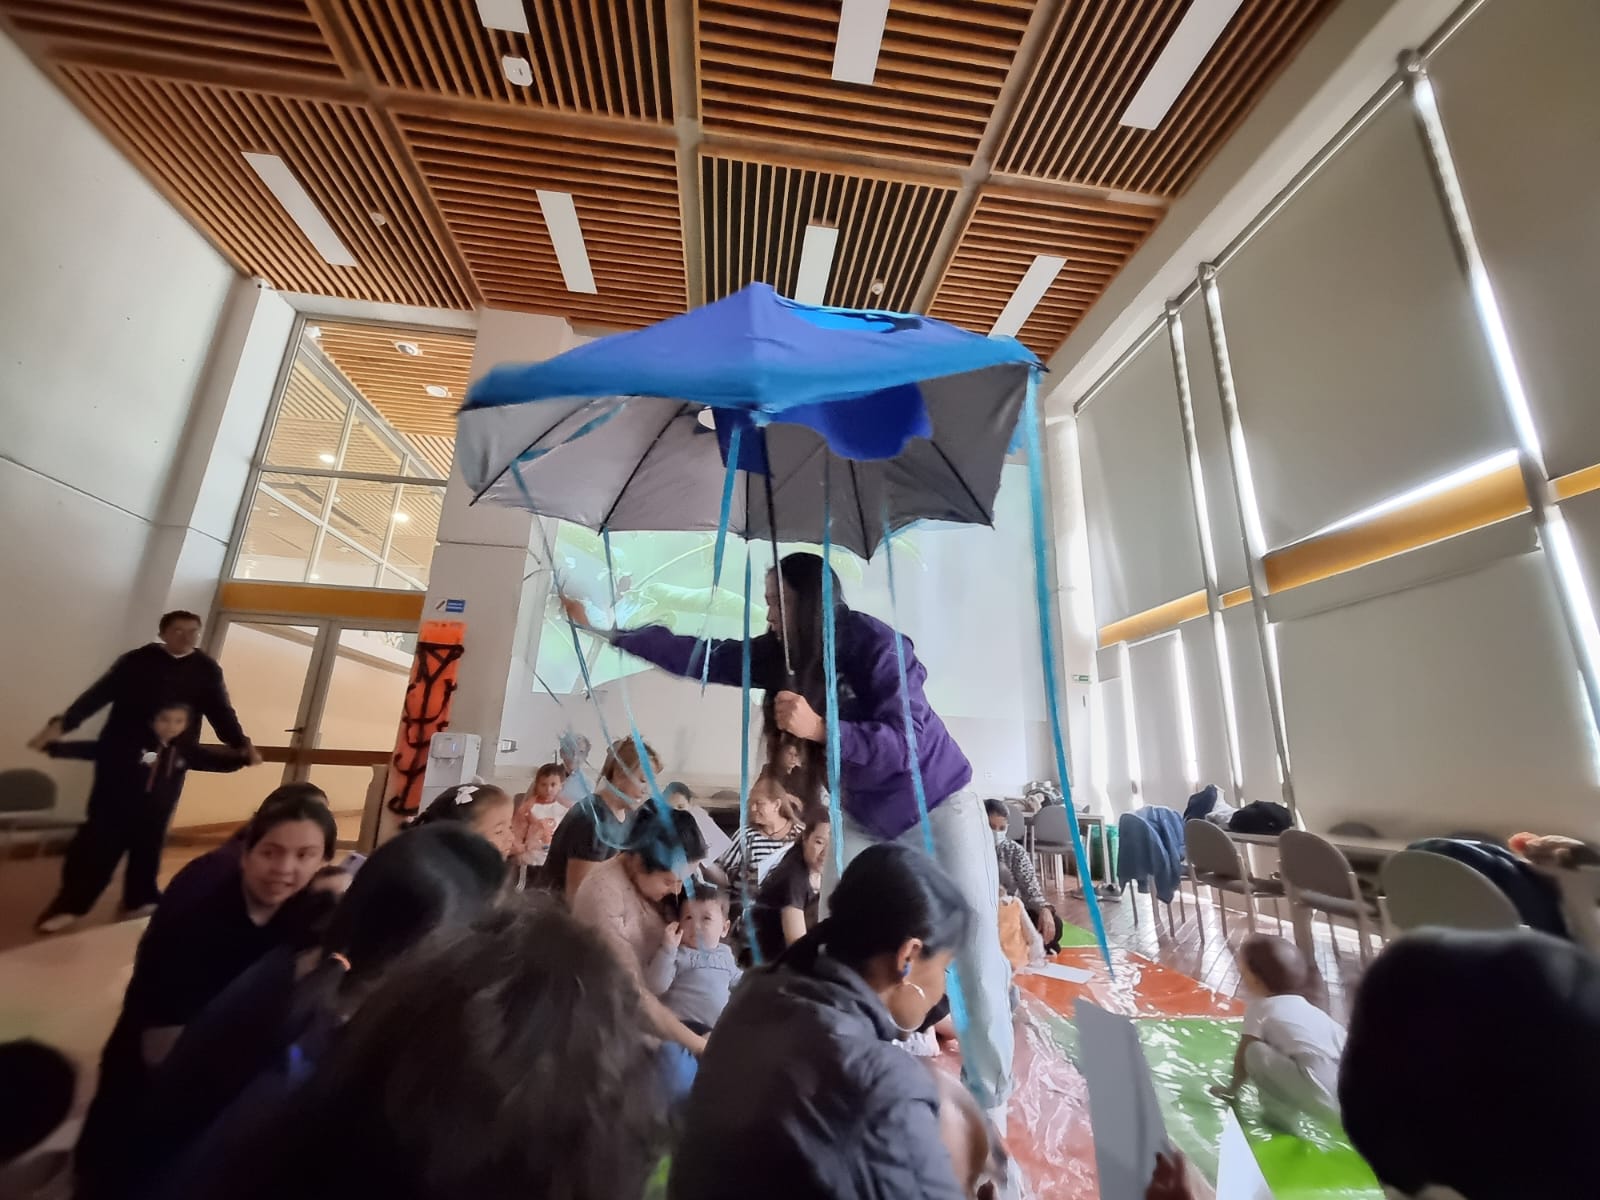 niños y niñas en medio de una obra de teatro mientras interactúan con un paraguas azul.